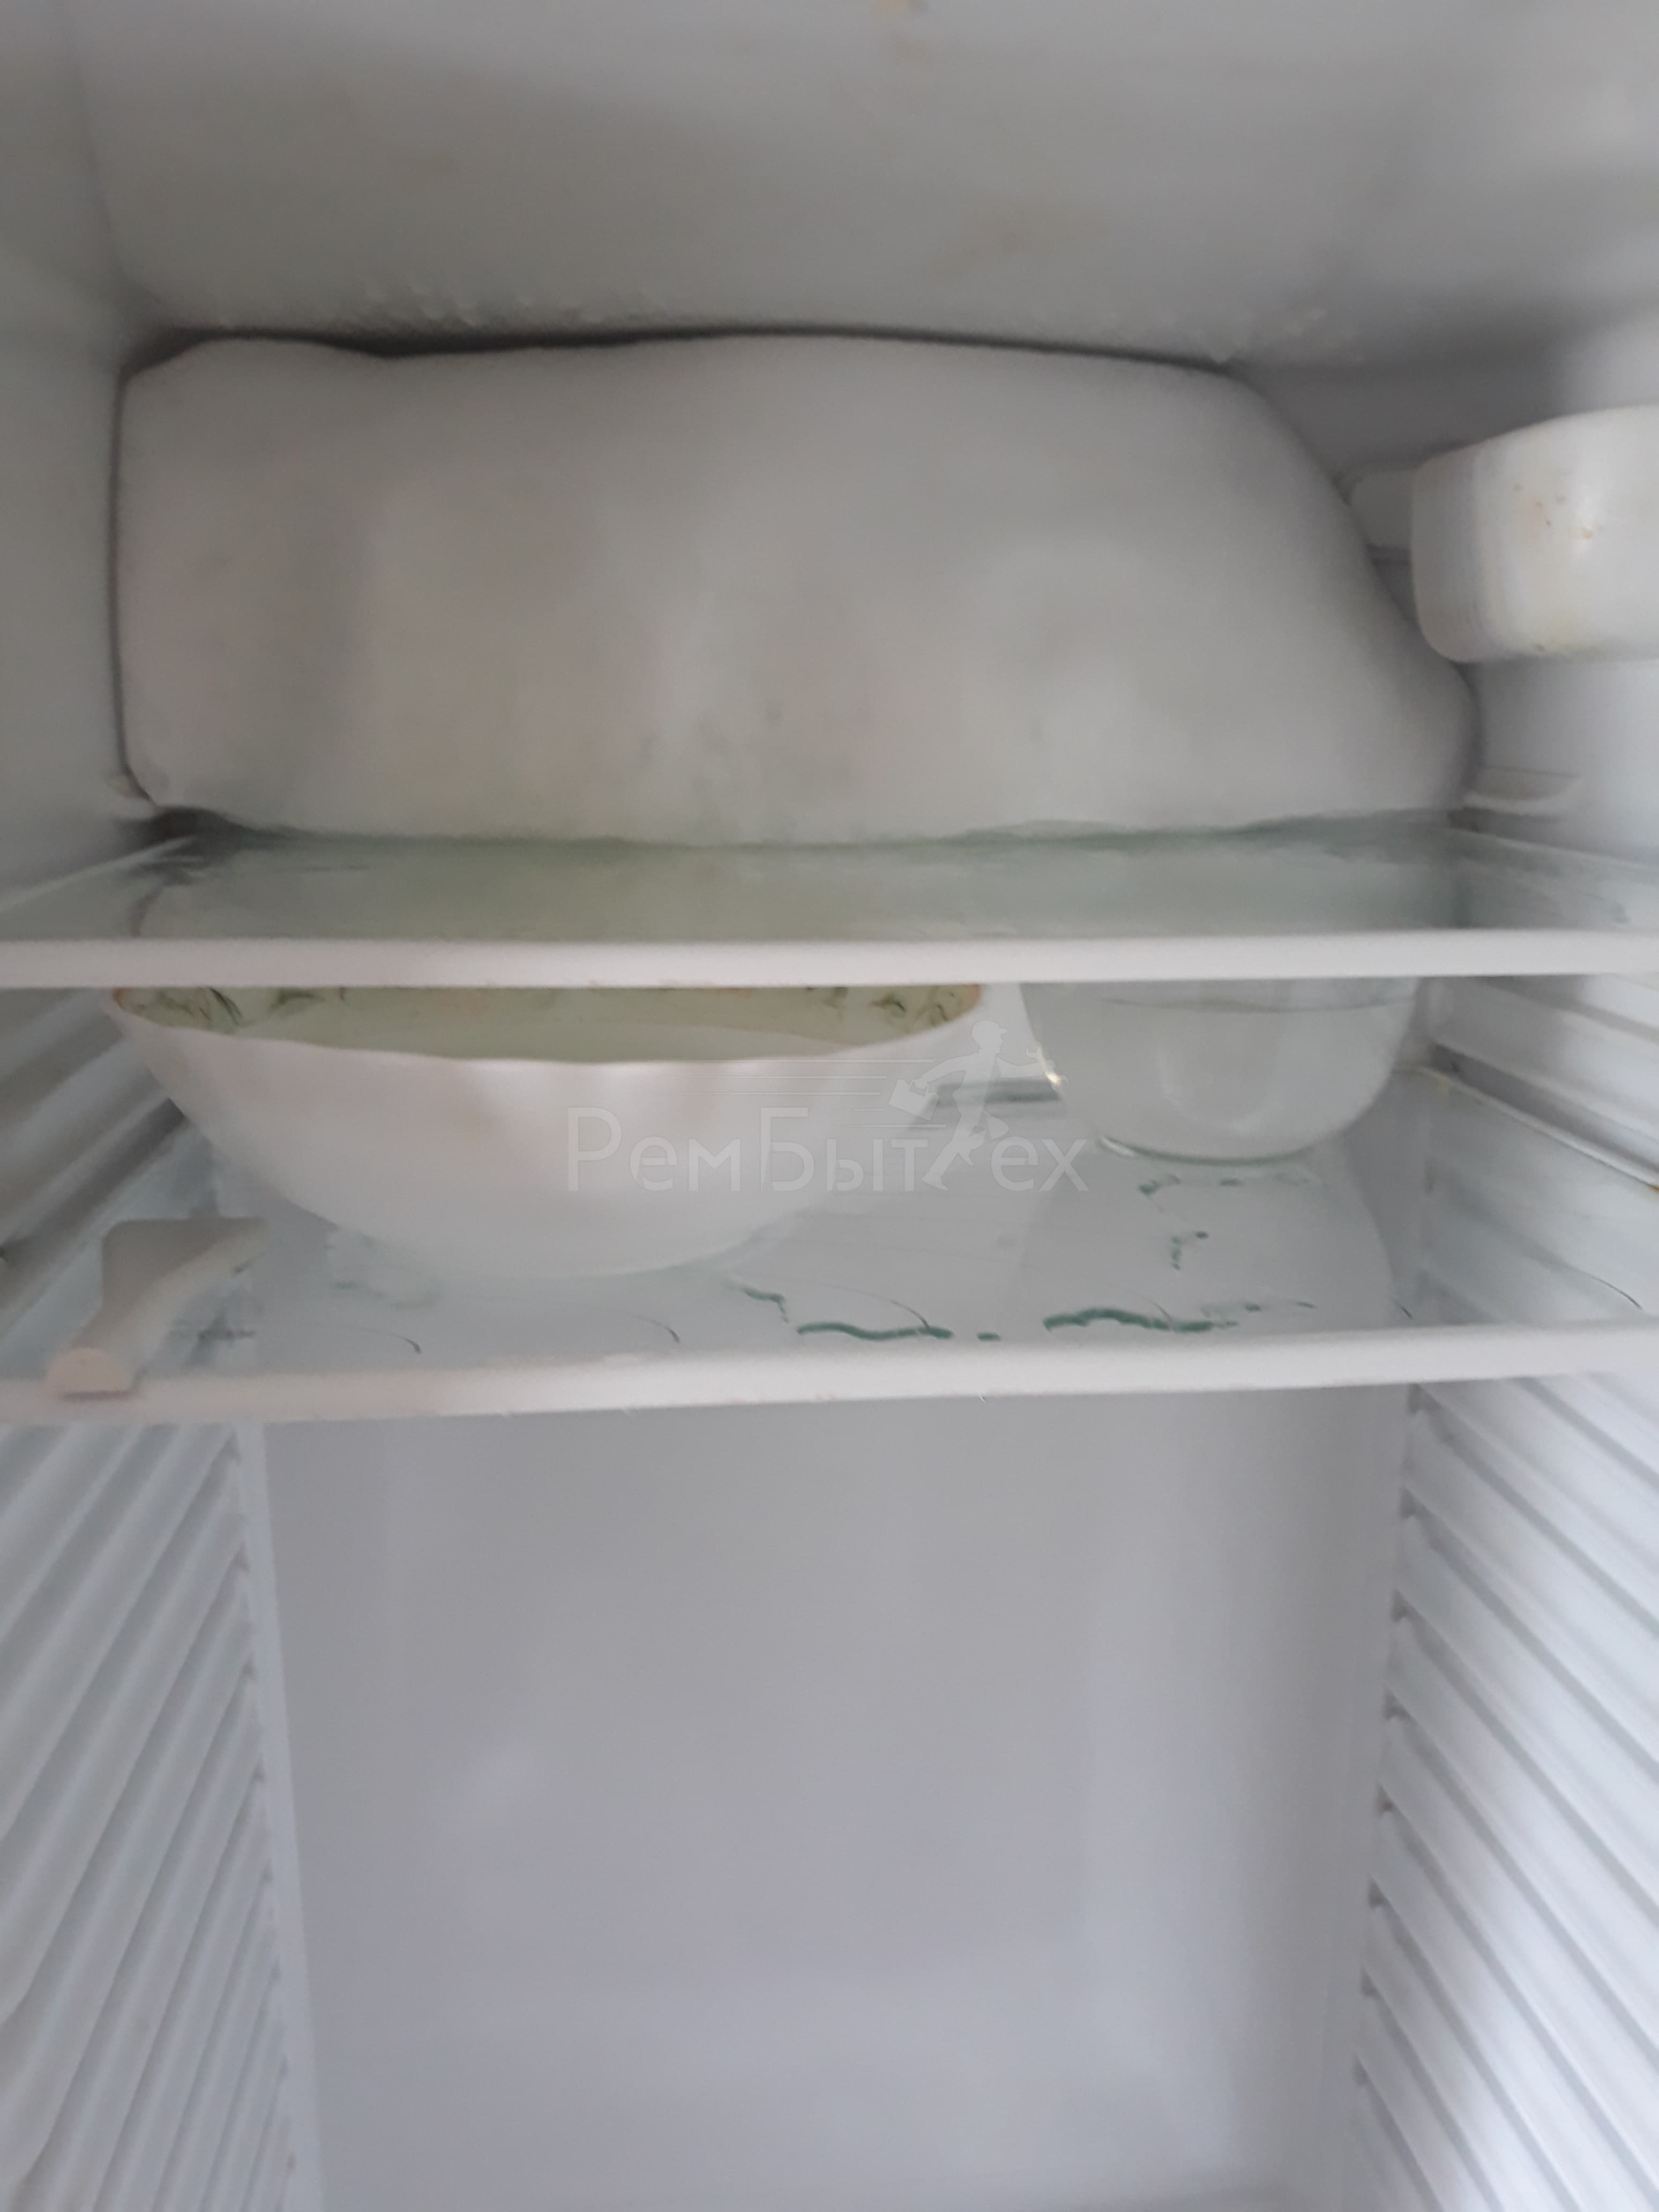 Почему в холодильнике появляется. Холодильник Индезит намерзание. Бирюса намерзает лед. Холодильник Атлант 103 намерзает лед внутри холодильной камеры. Намерзает лед на испарителе в холодильнике Атлант хм4425 009 ND.